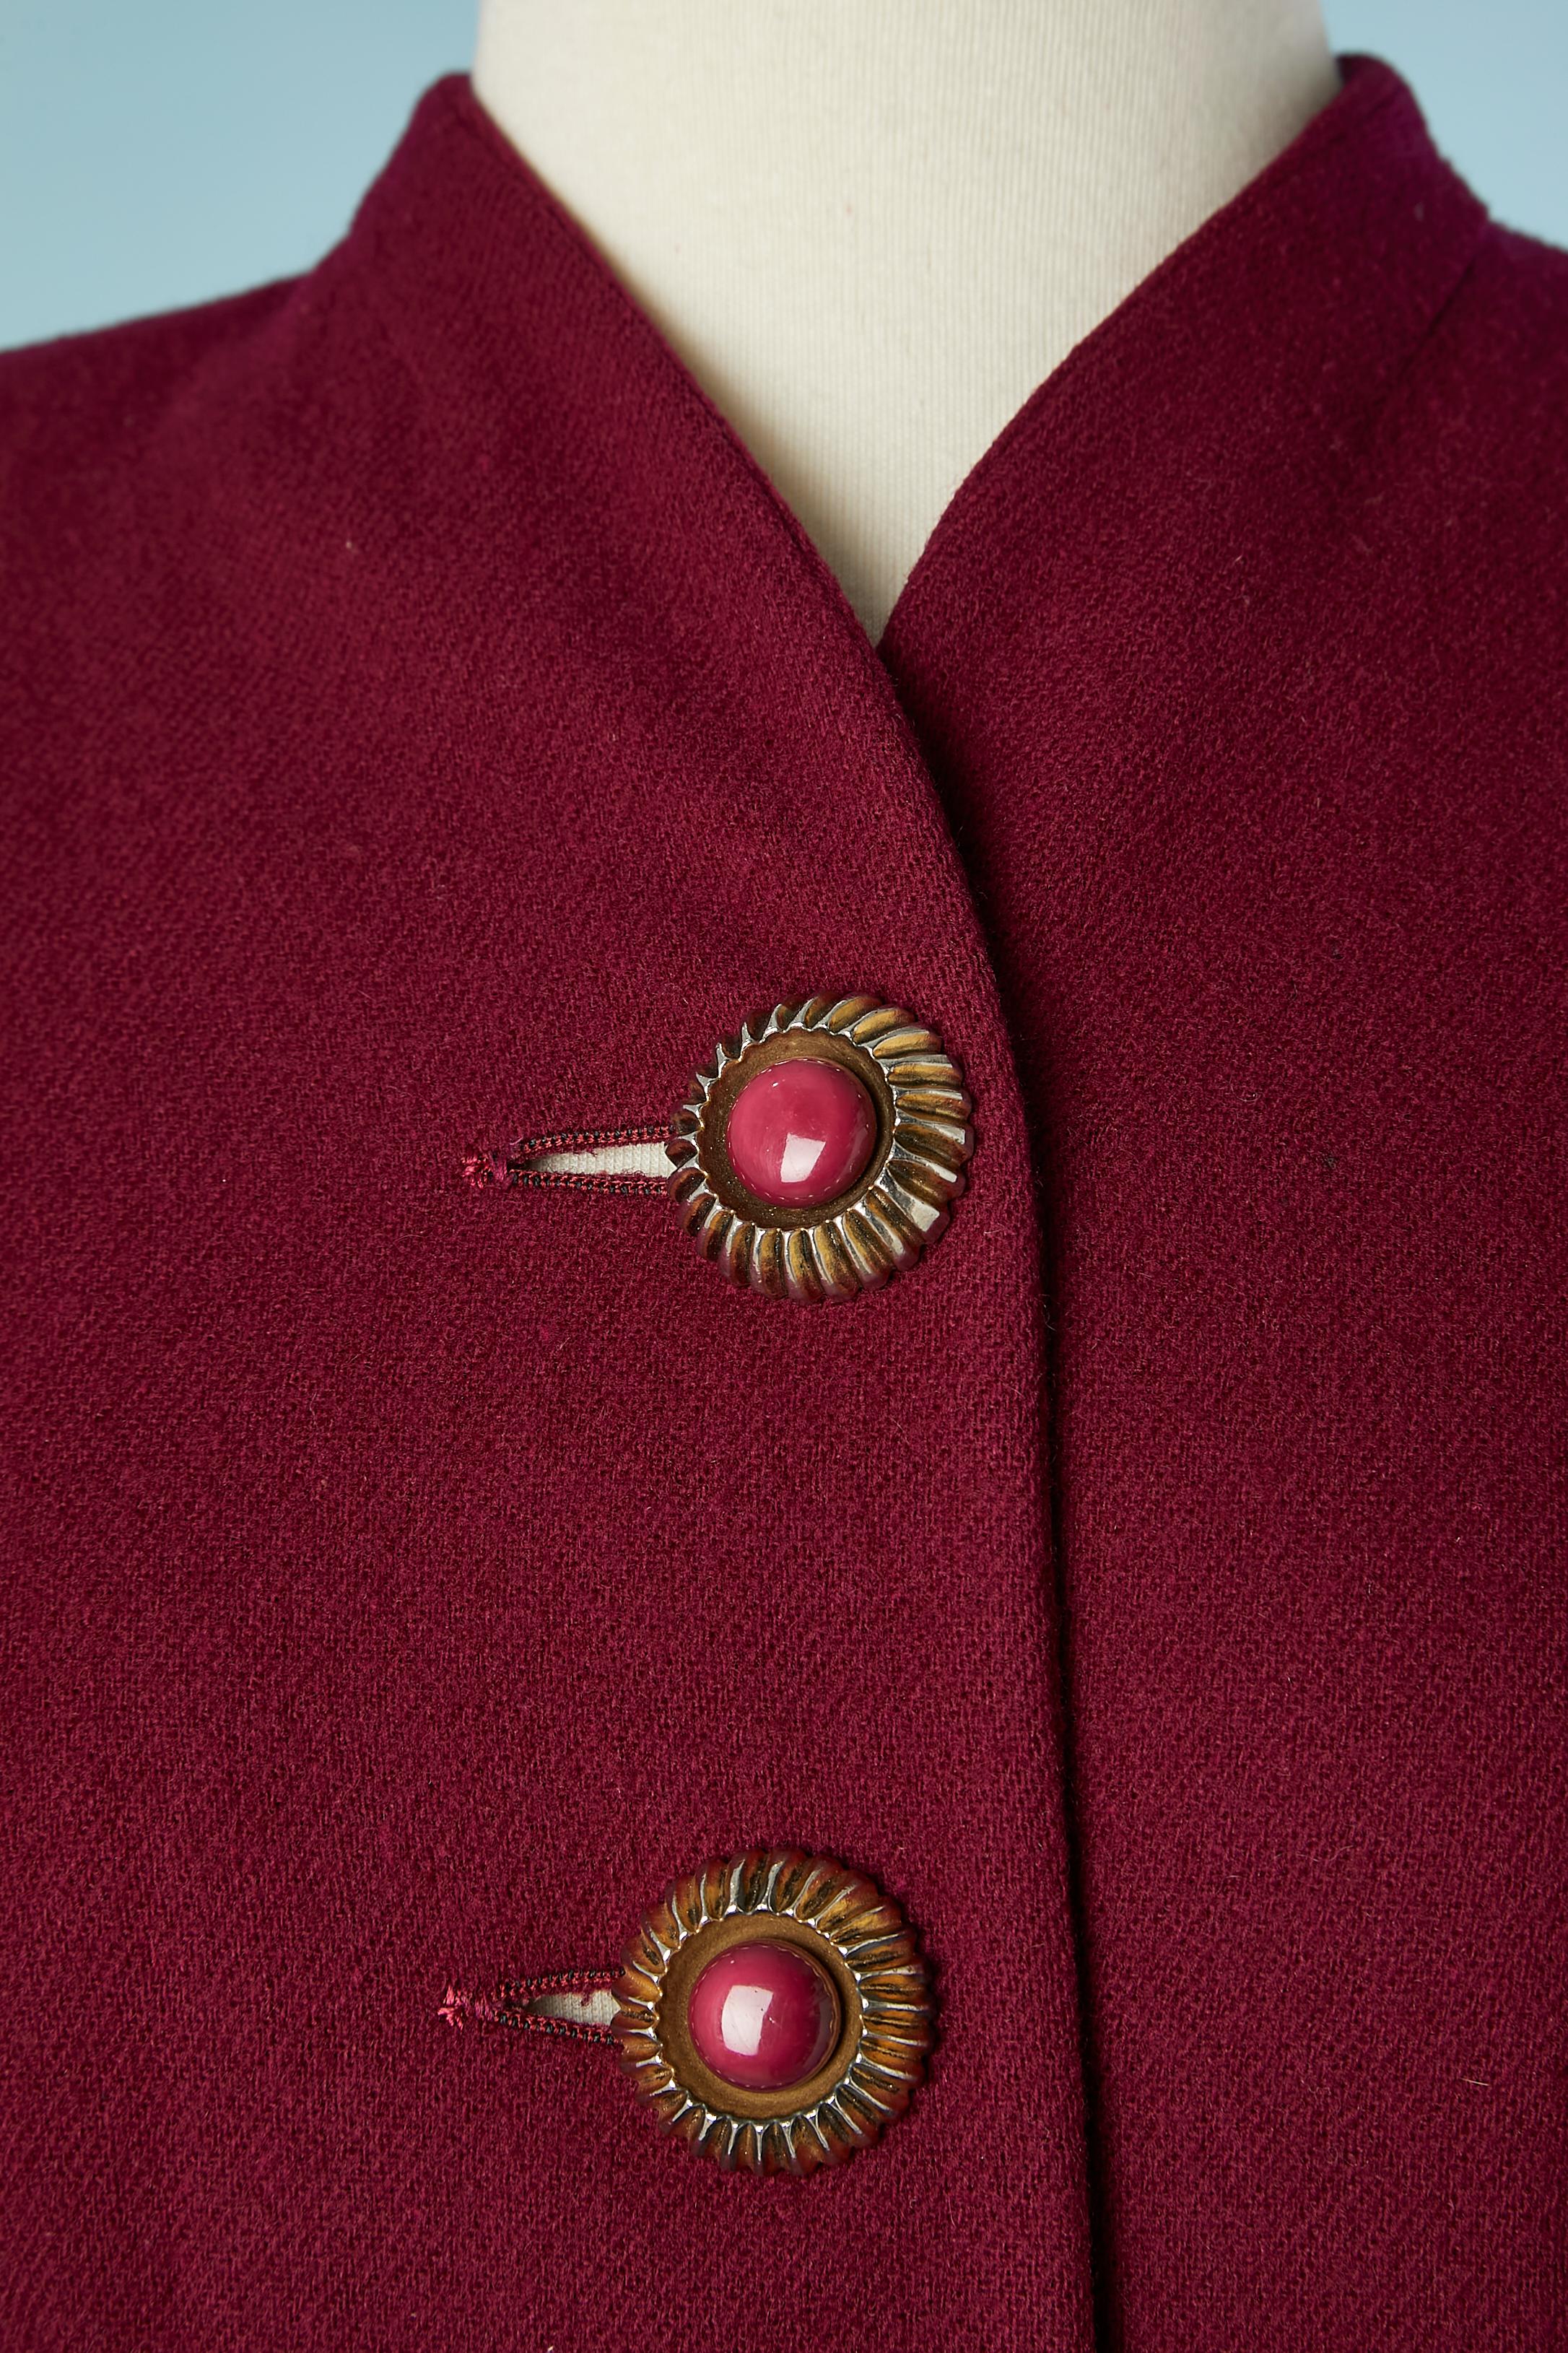 Combinaison jupe en laine de couleur bourgogne avec bouton bijou. Doublure en rayonne rose pâle. Travail de coupe et pochette 